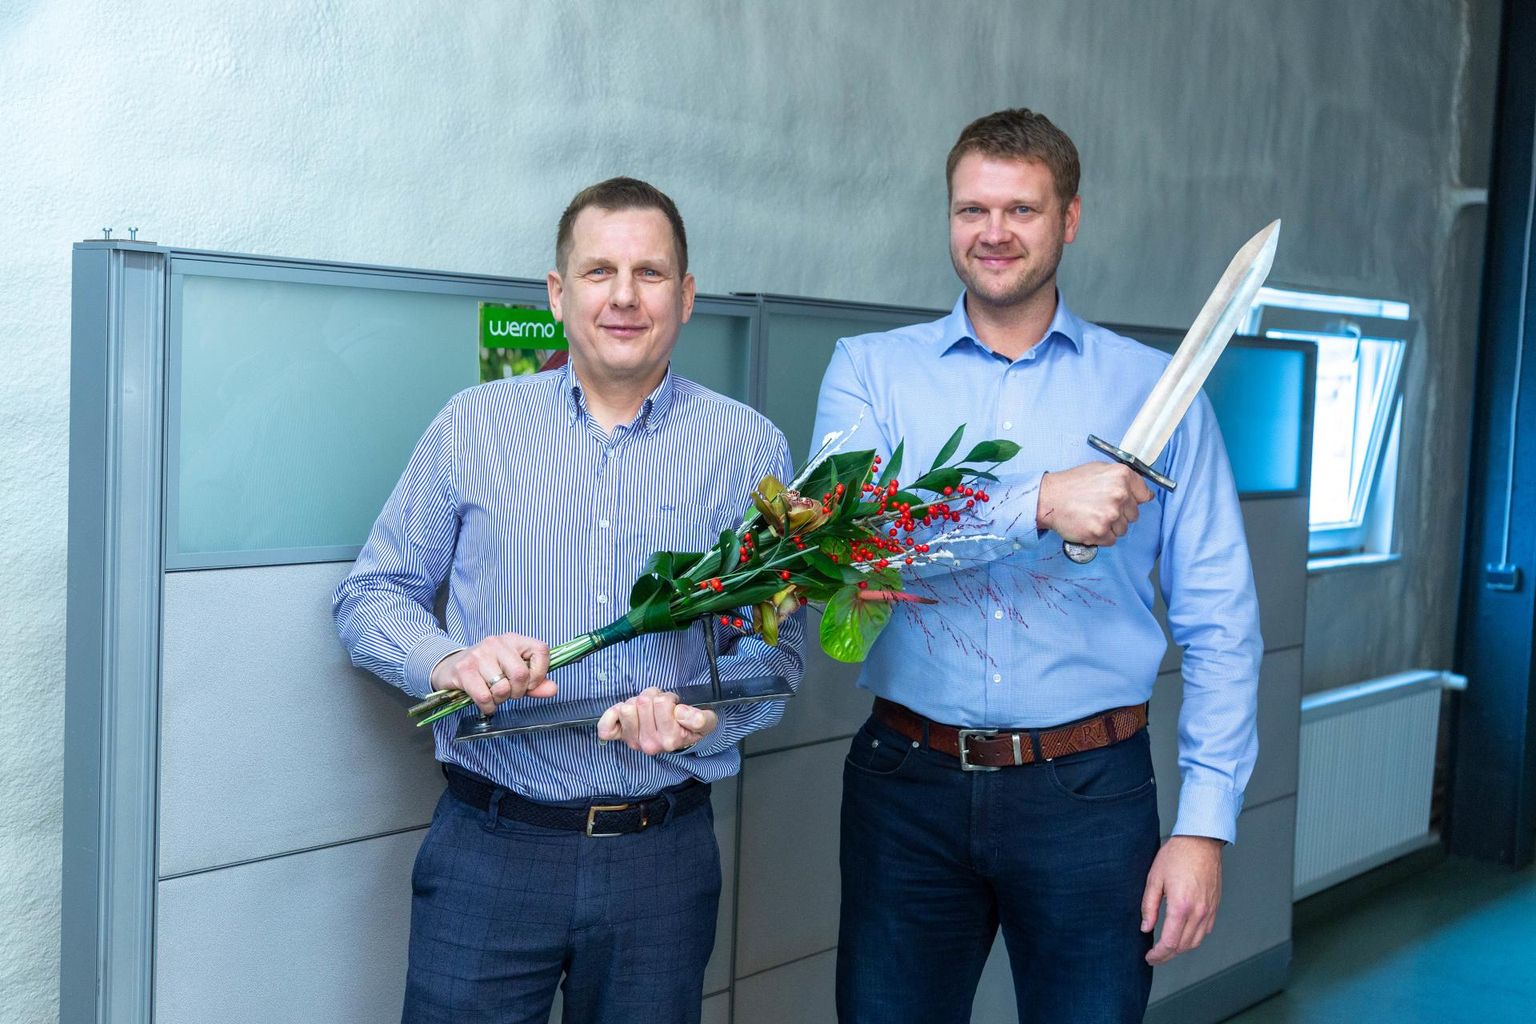 Lõuna-Eesti Postimehe korraldatud konkursil kuulutati aasta ettevõtteks AS Wermo. Tiitliga kaasnes sepistatud mõõk, mille võtsid vastu müügi- ja arendusjuht Peeter Kuum (vasakul) ning juhatuse liige Raul Vene.